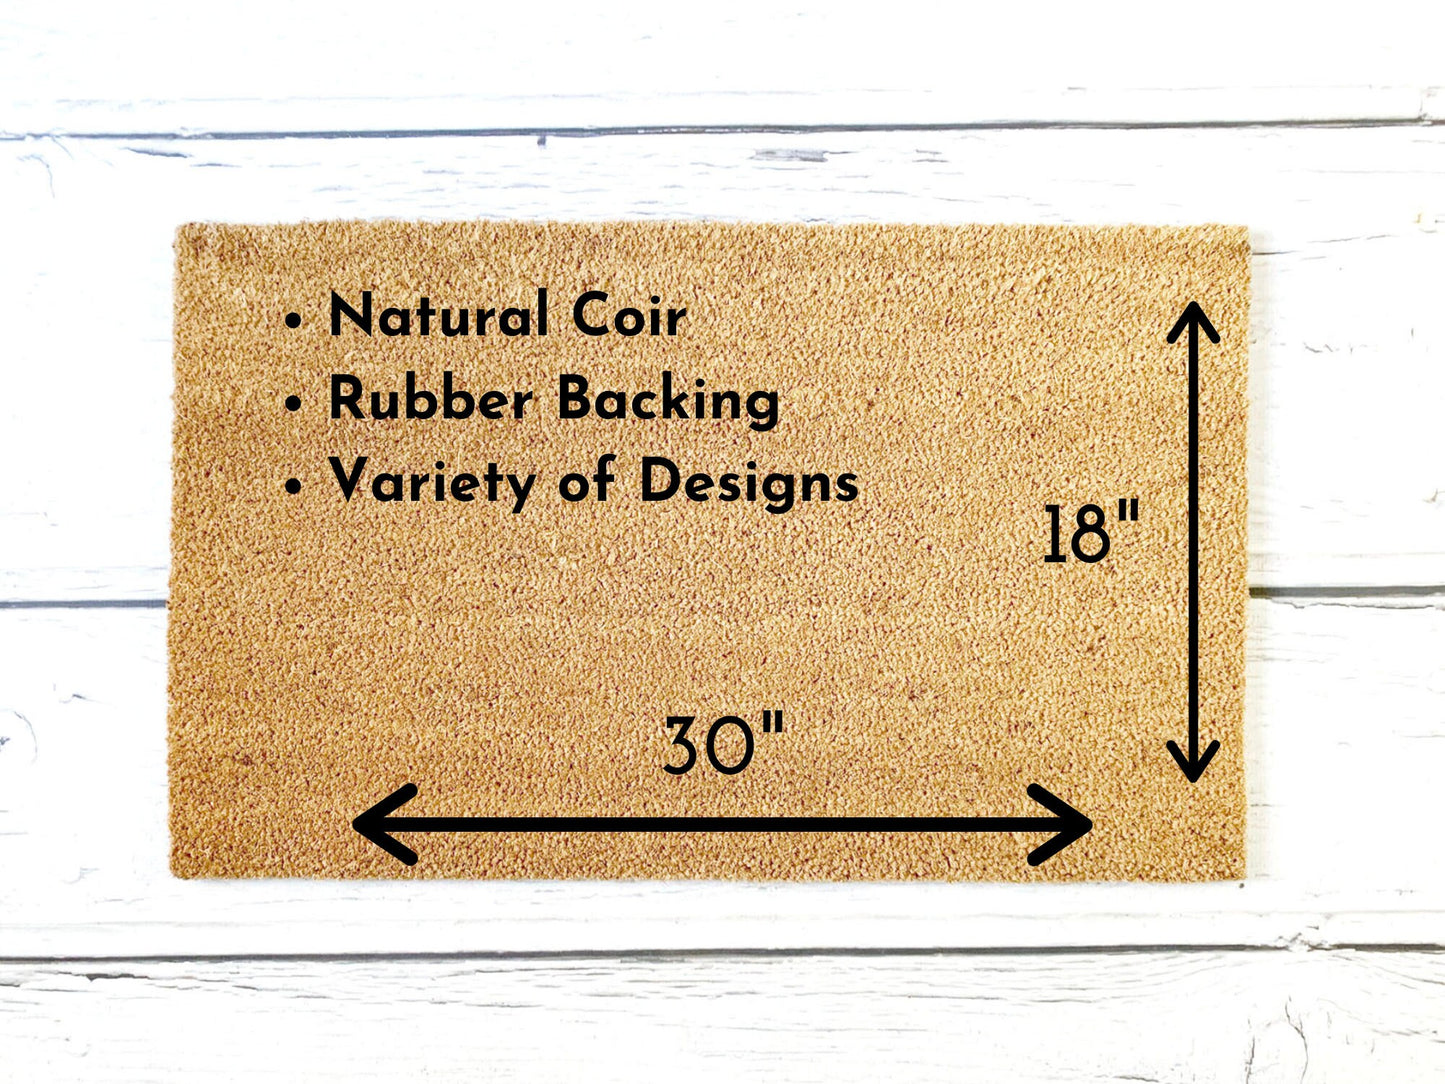 Pull the Lever Kronk Doormat | Housewarming Gift | Wedding Gift | Custom Doormat | Closing Gift | Welcome Doormat | Disney Doormat | Home